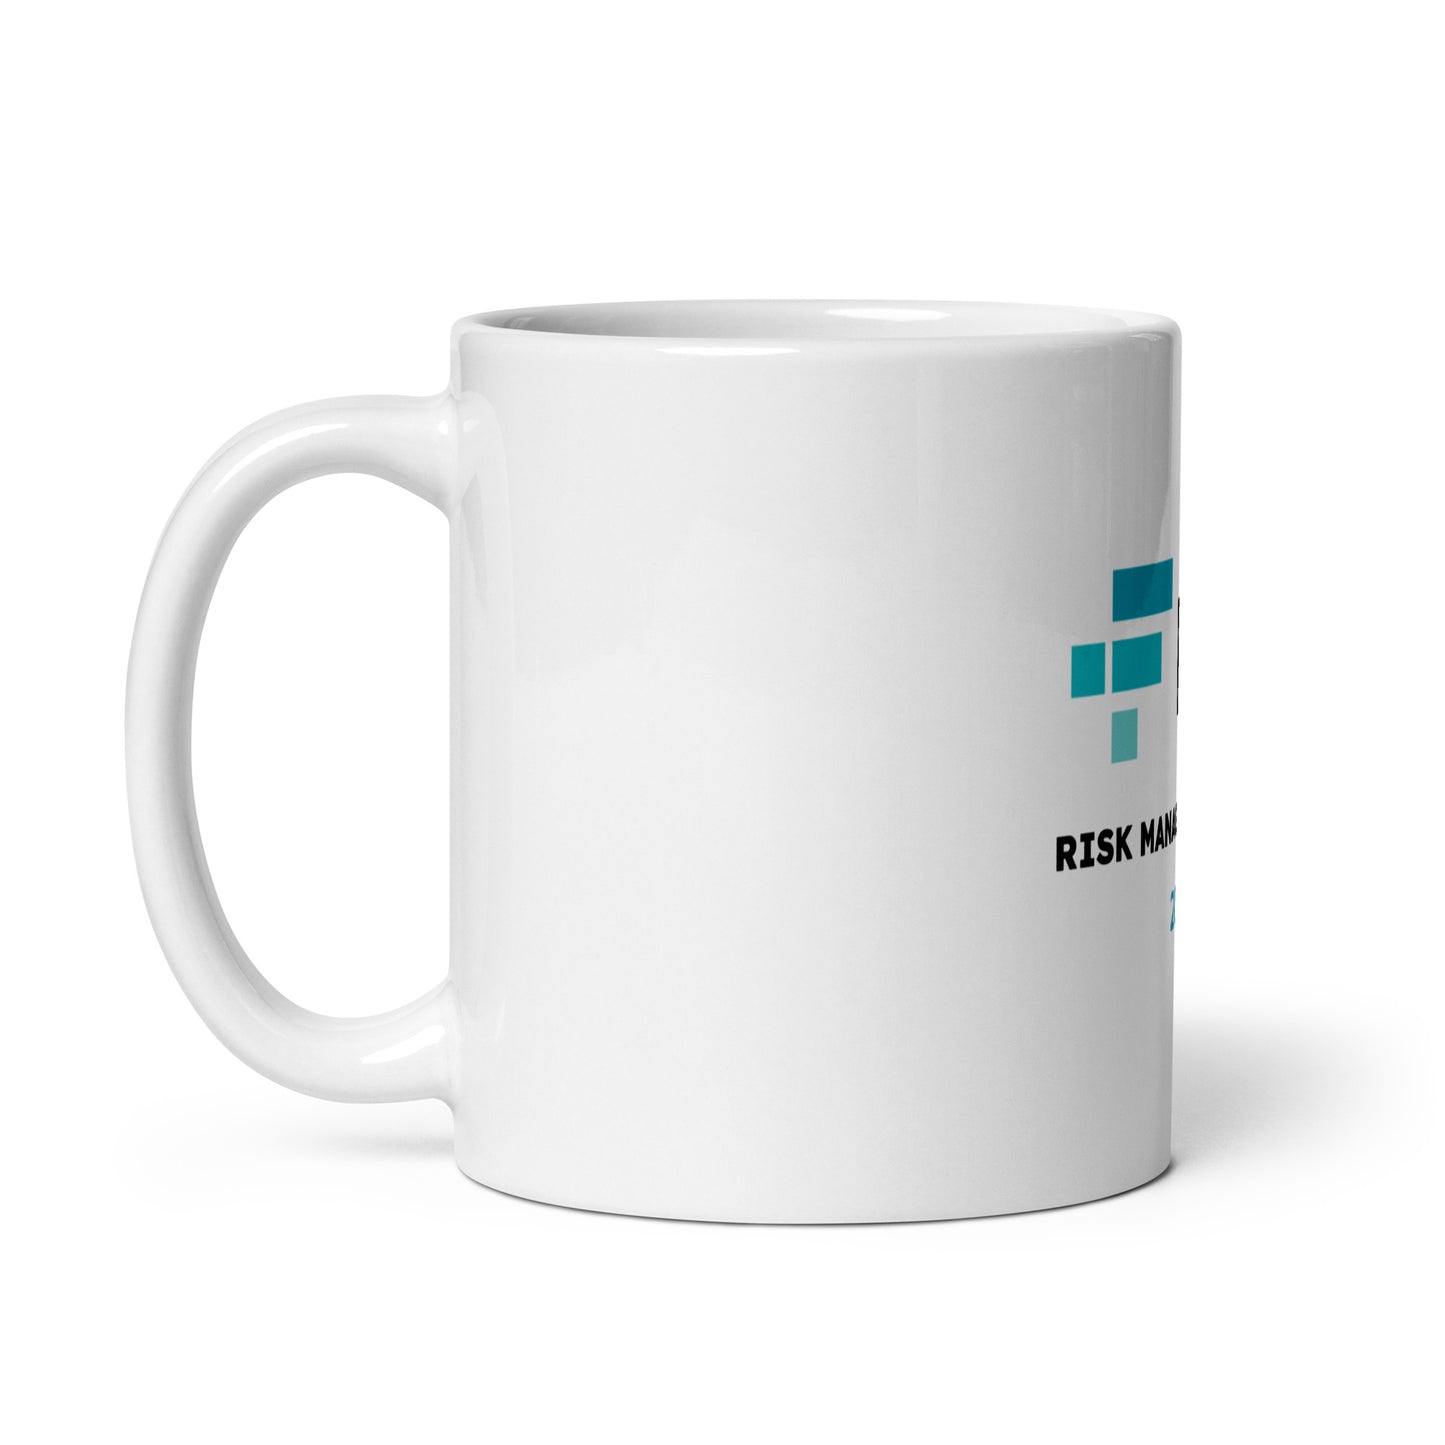 FTX Risk Management Dept. White glossy mug